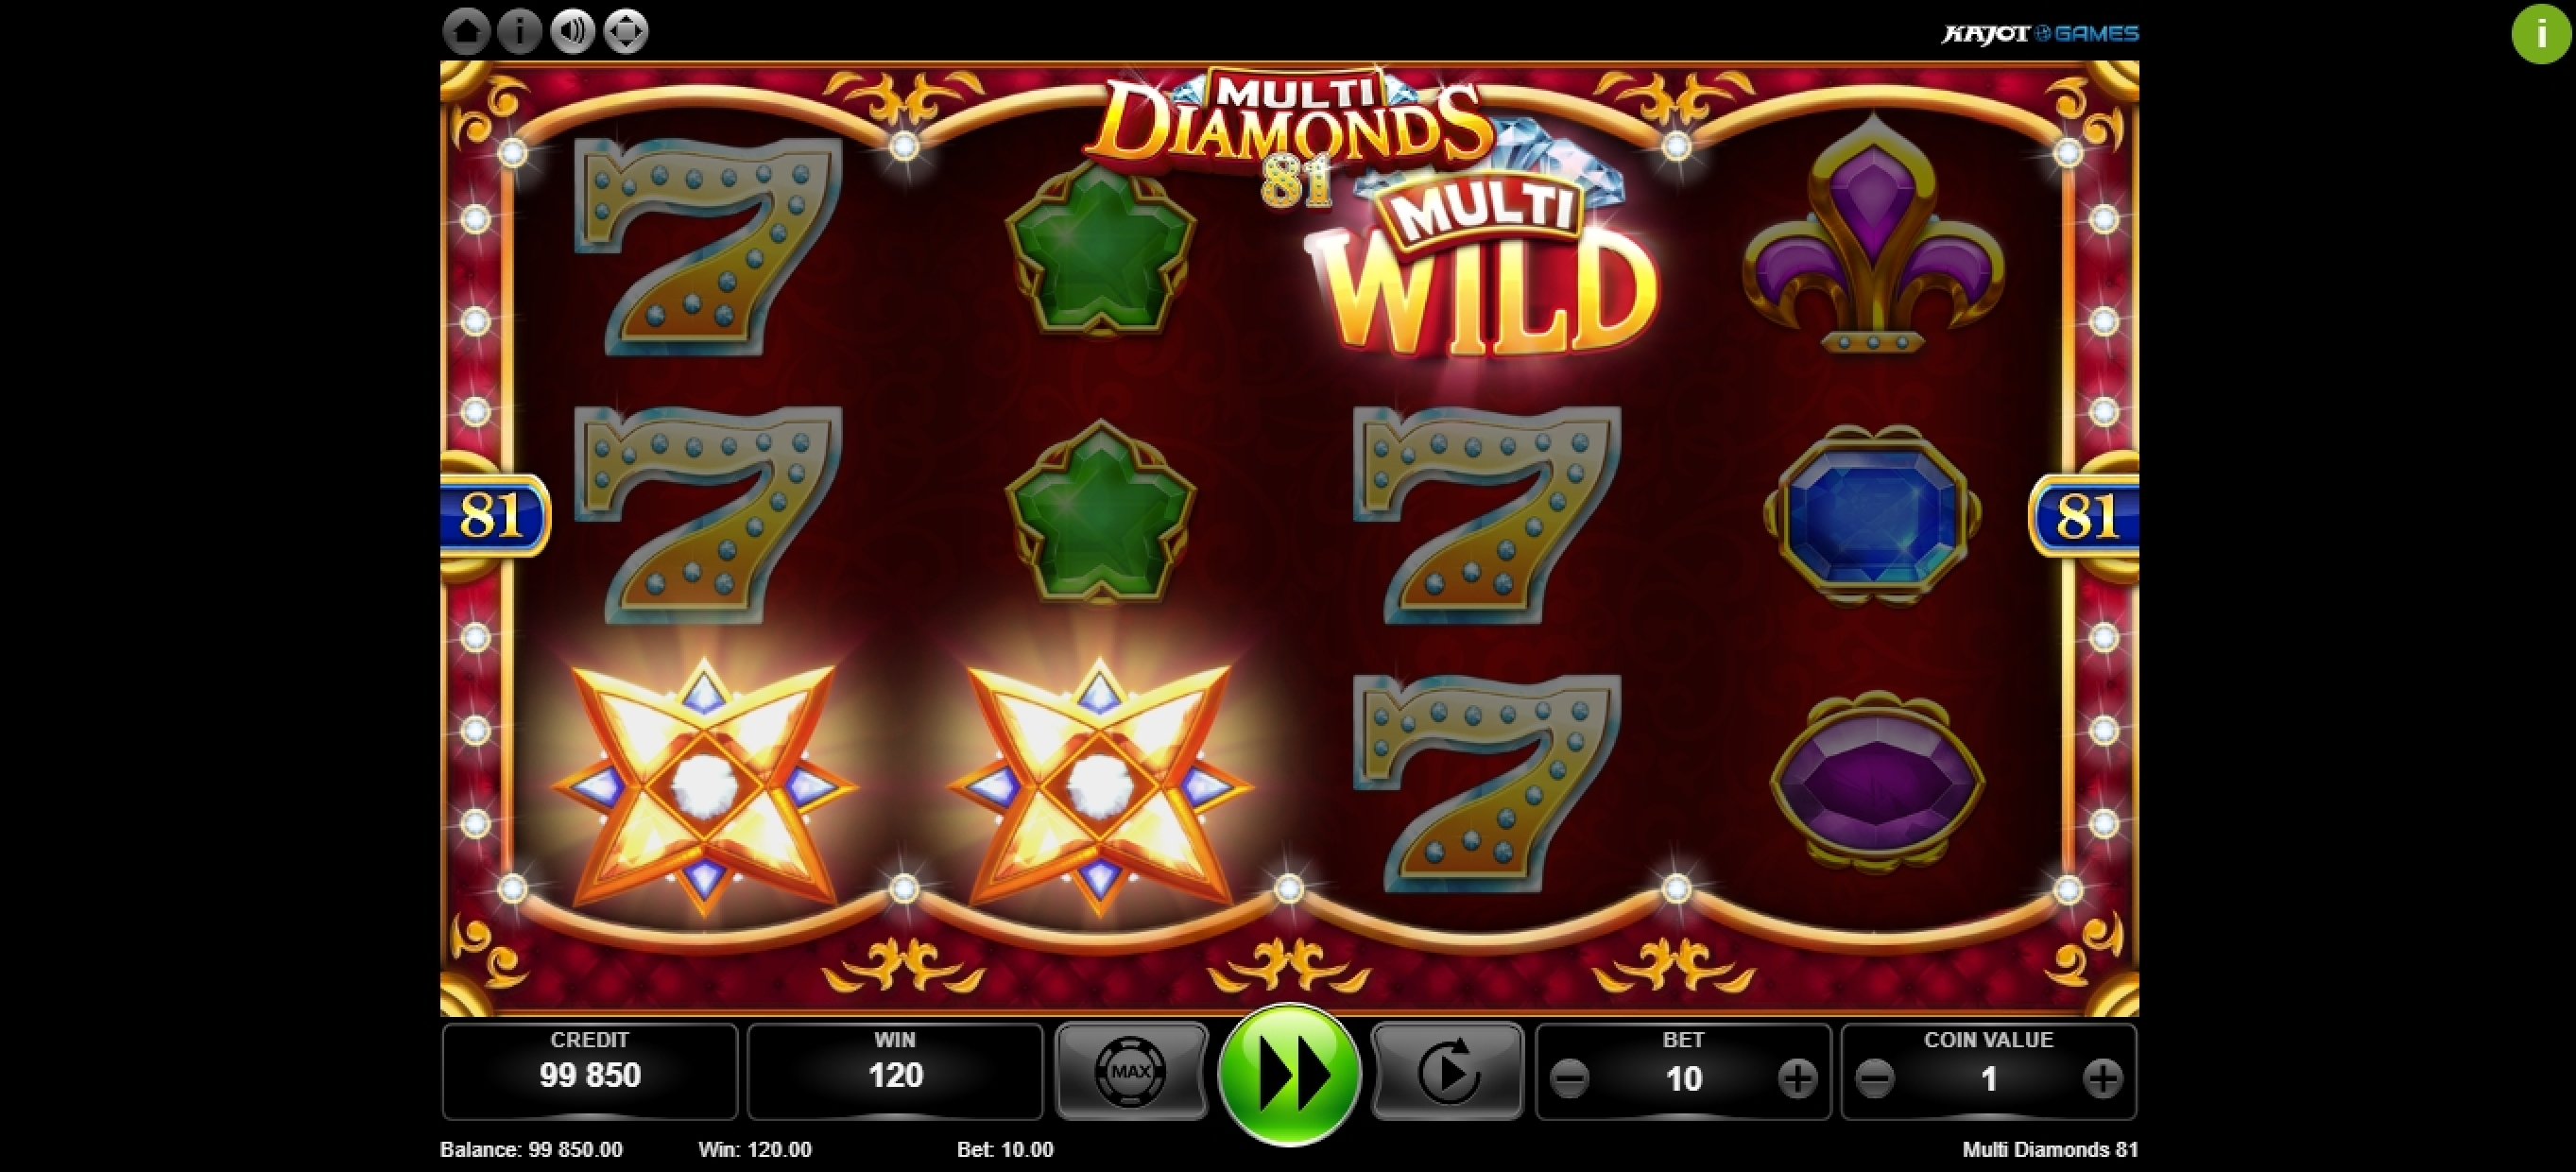 Win Money in Multi Diamonds 81 Free Slot Game by Kajot